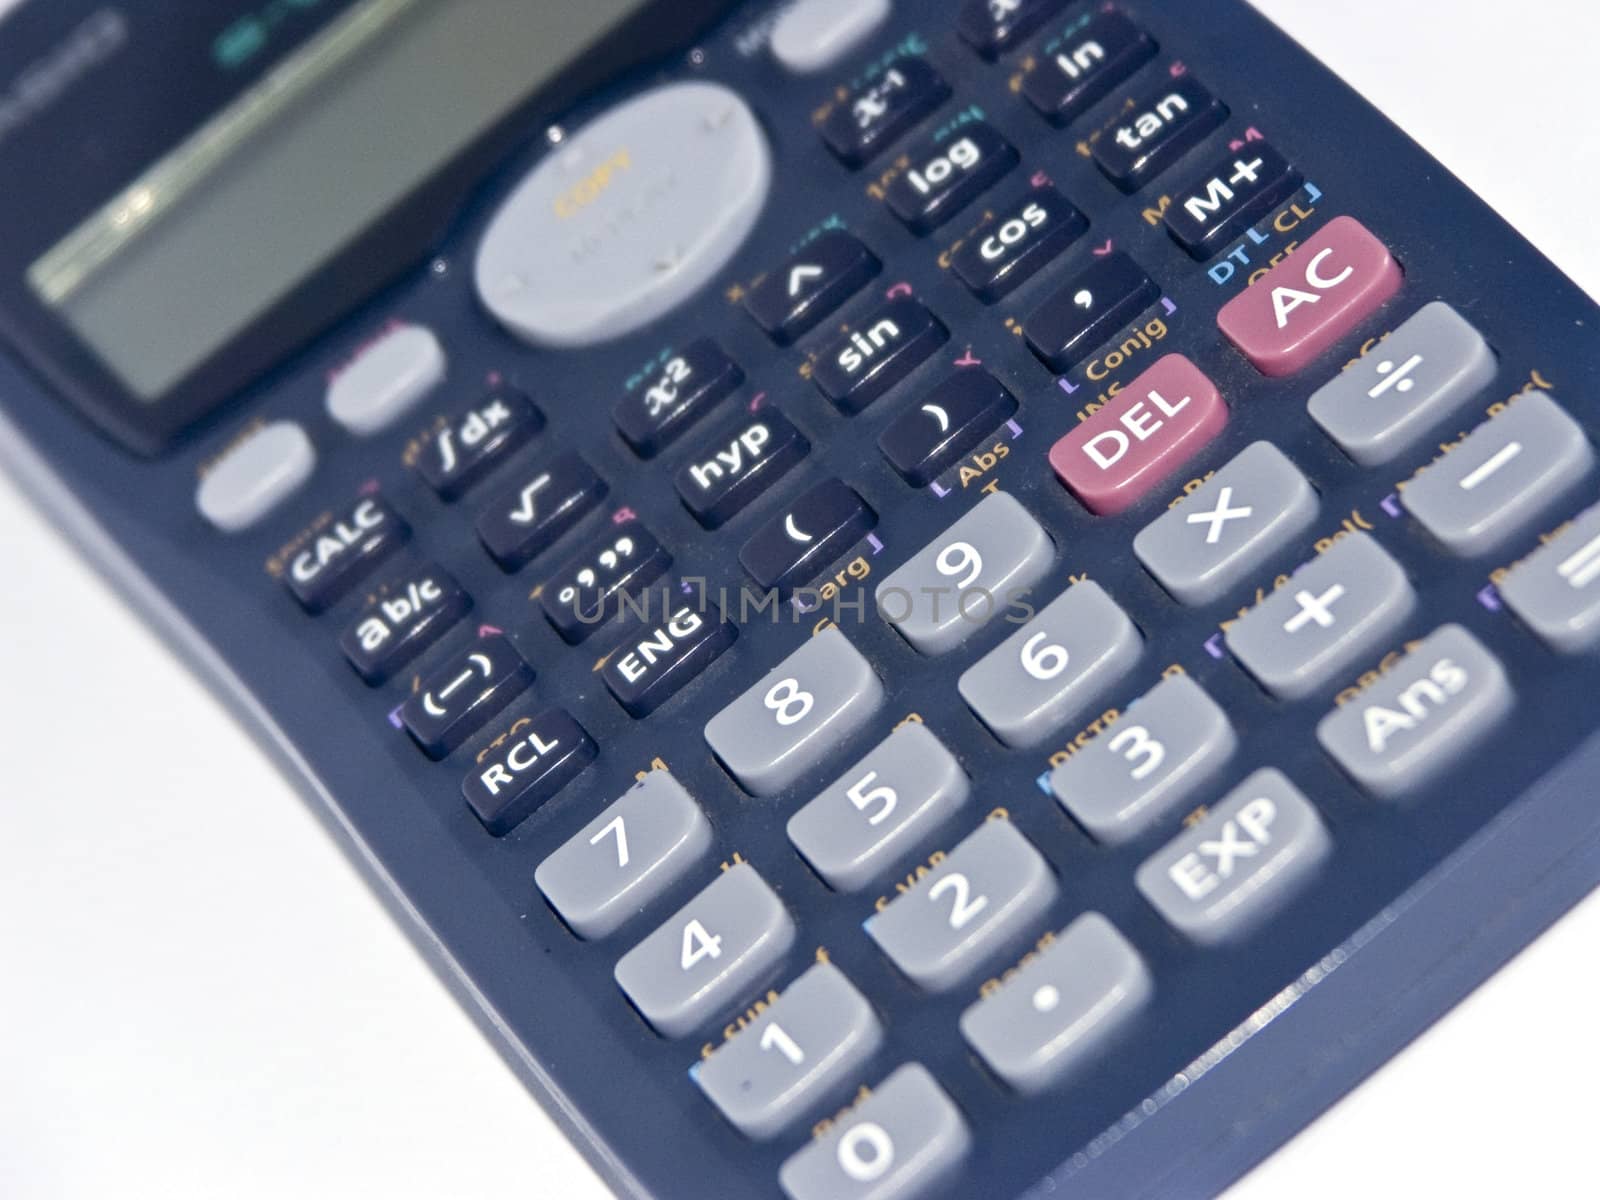 The calculator 1 by soloir